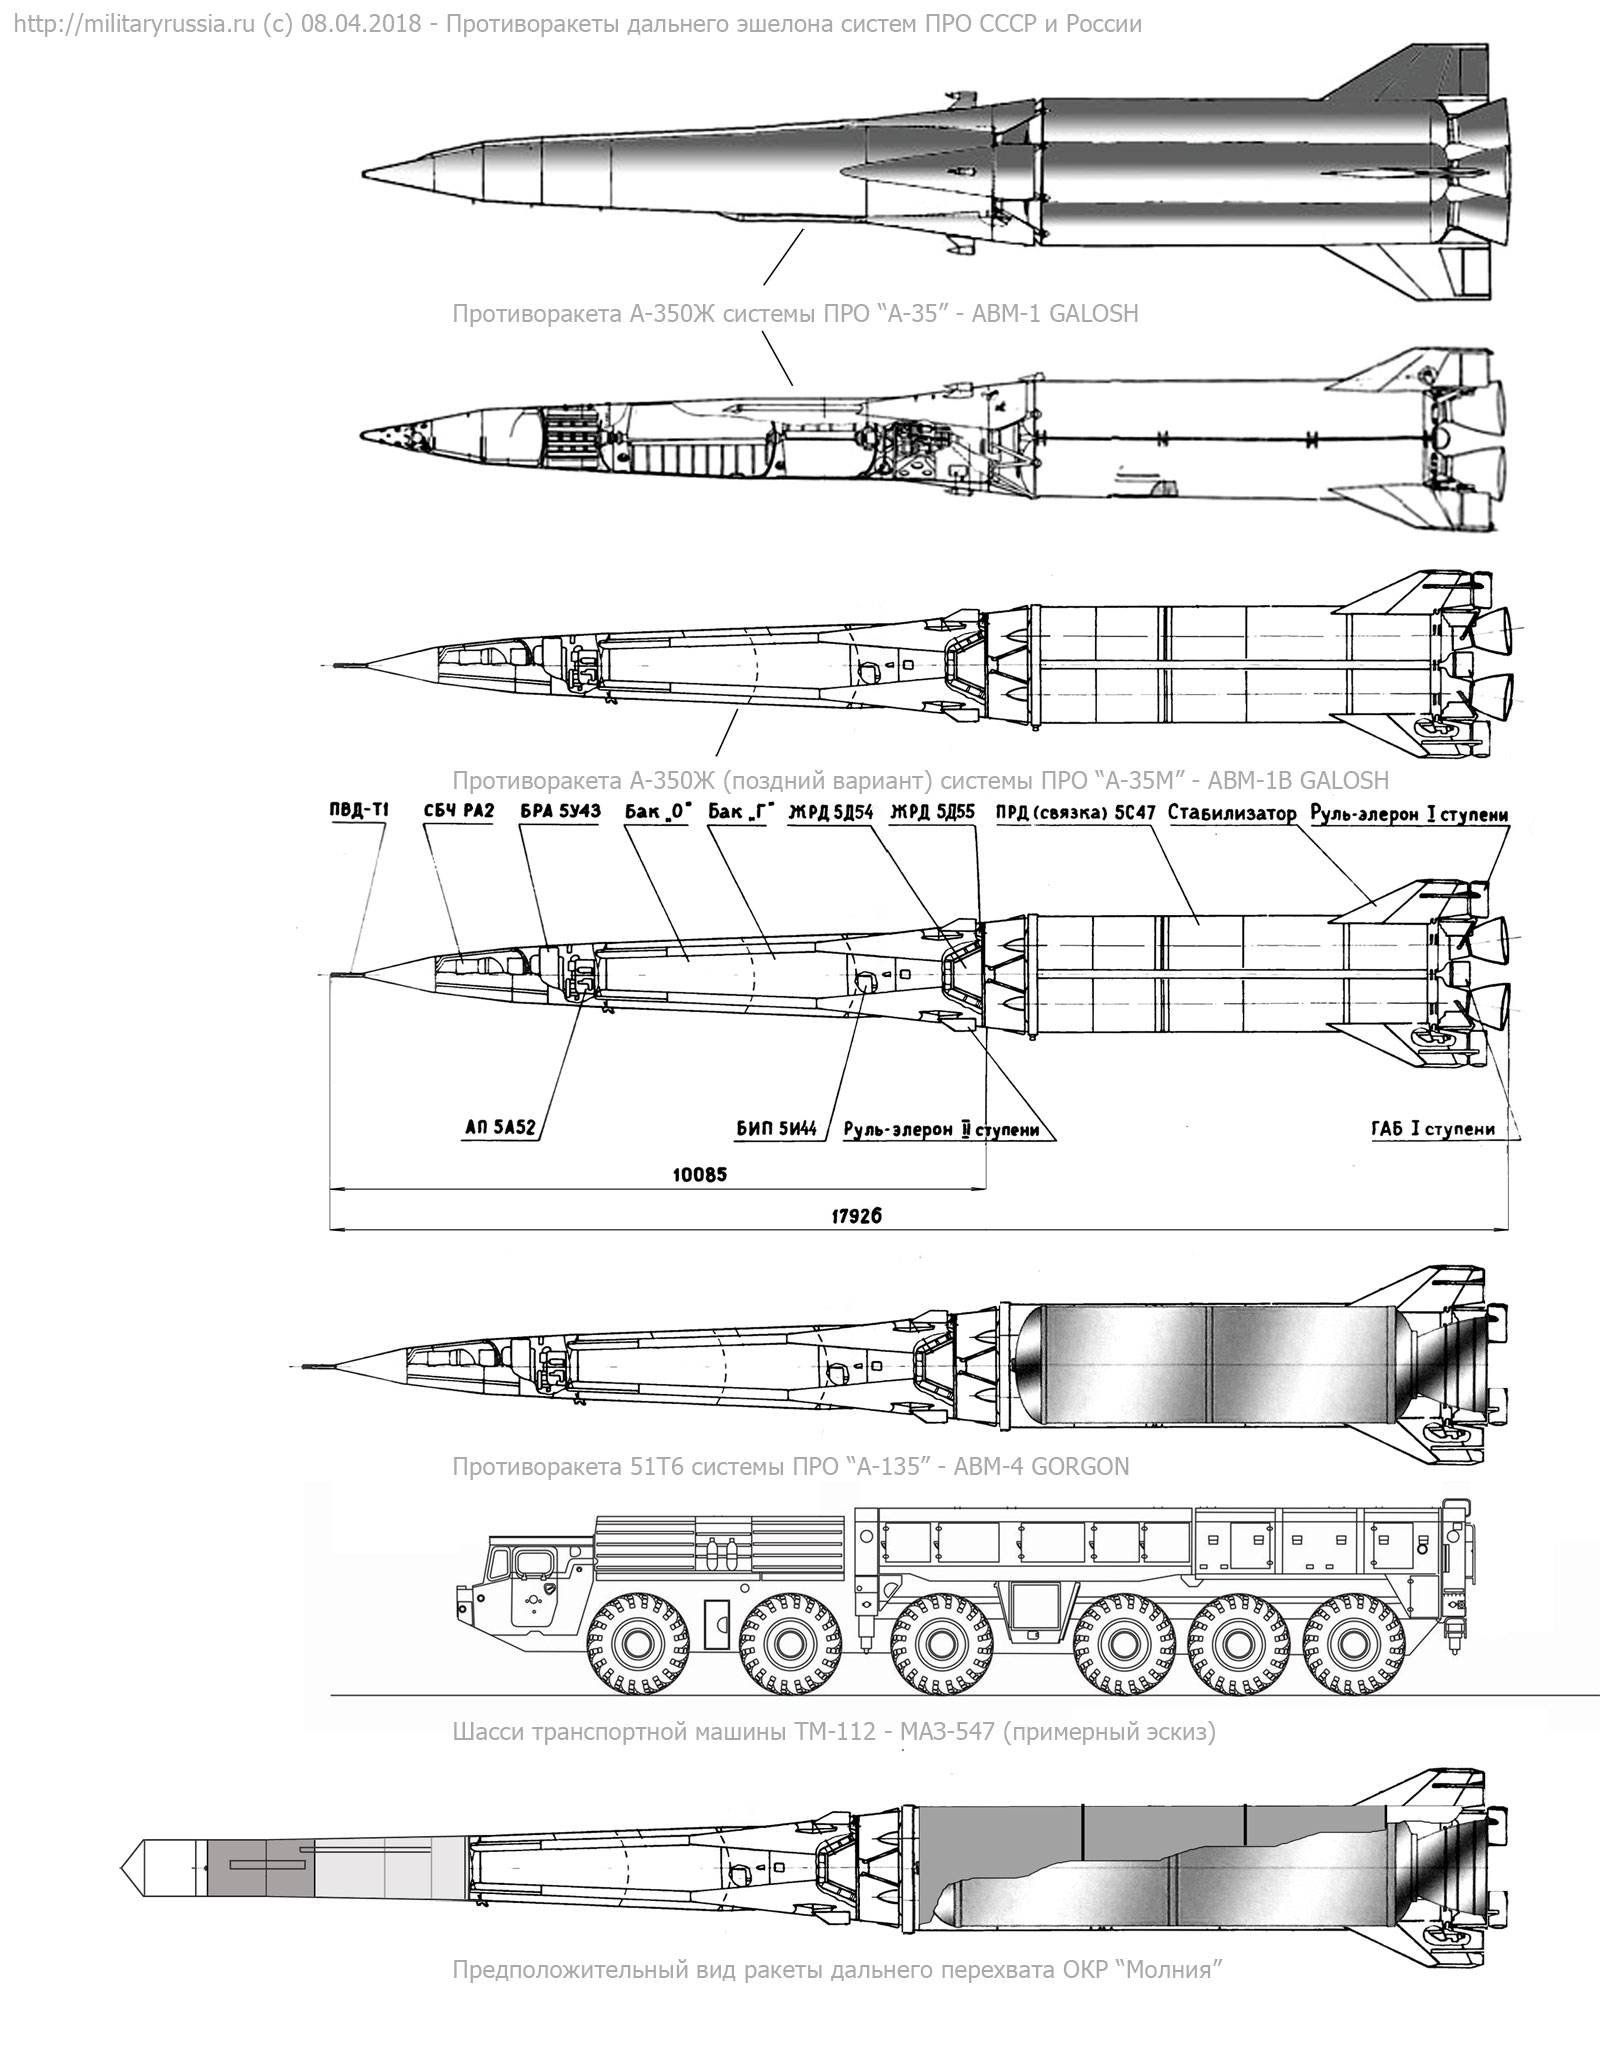 Комплекс 14Ц033 Нудоль, ракета 14А042